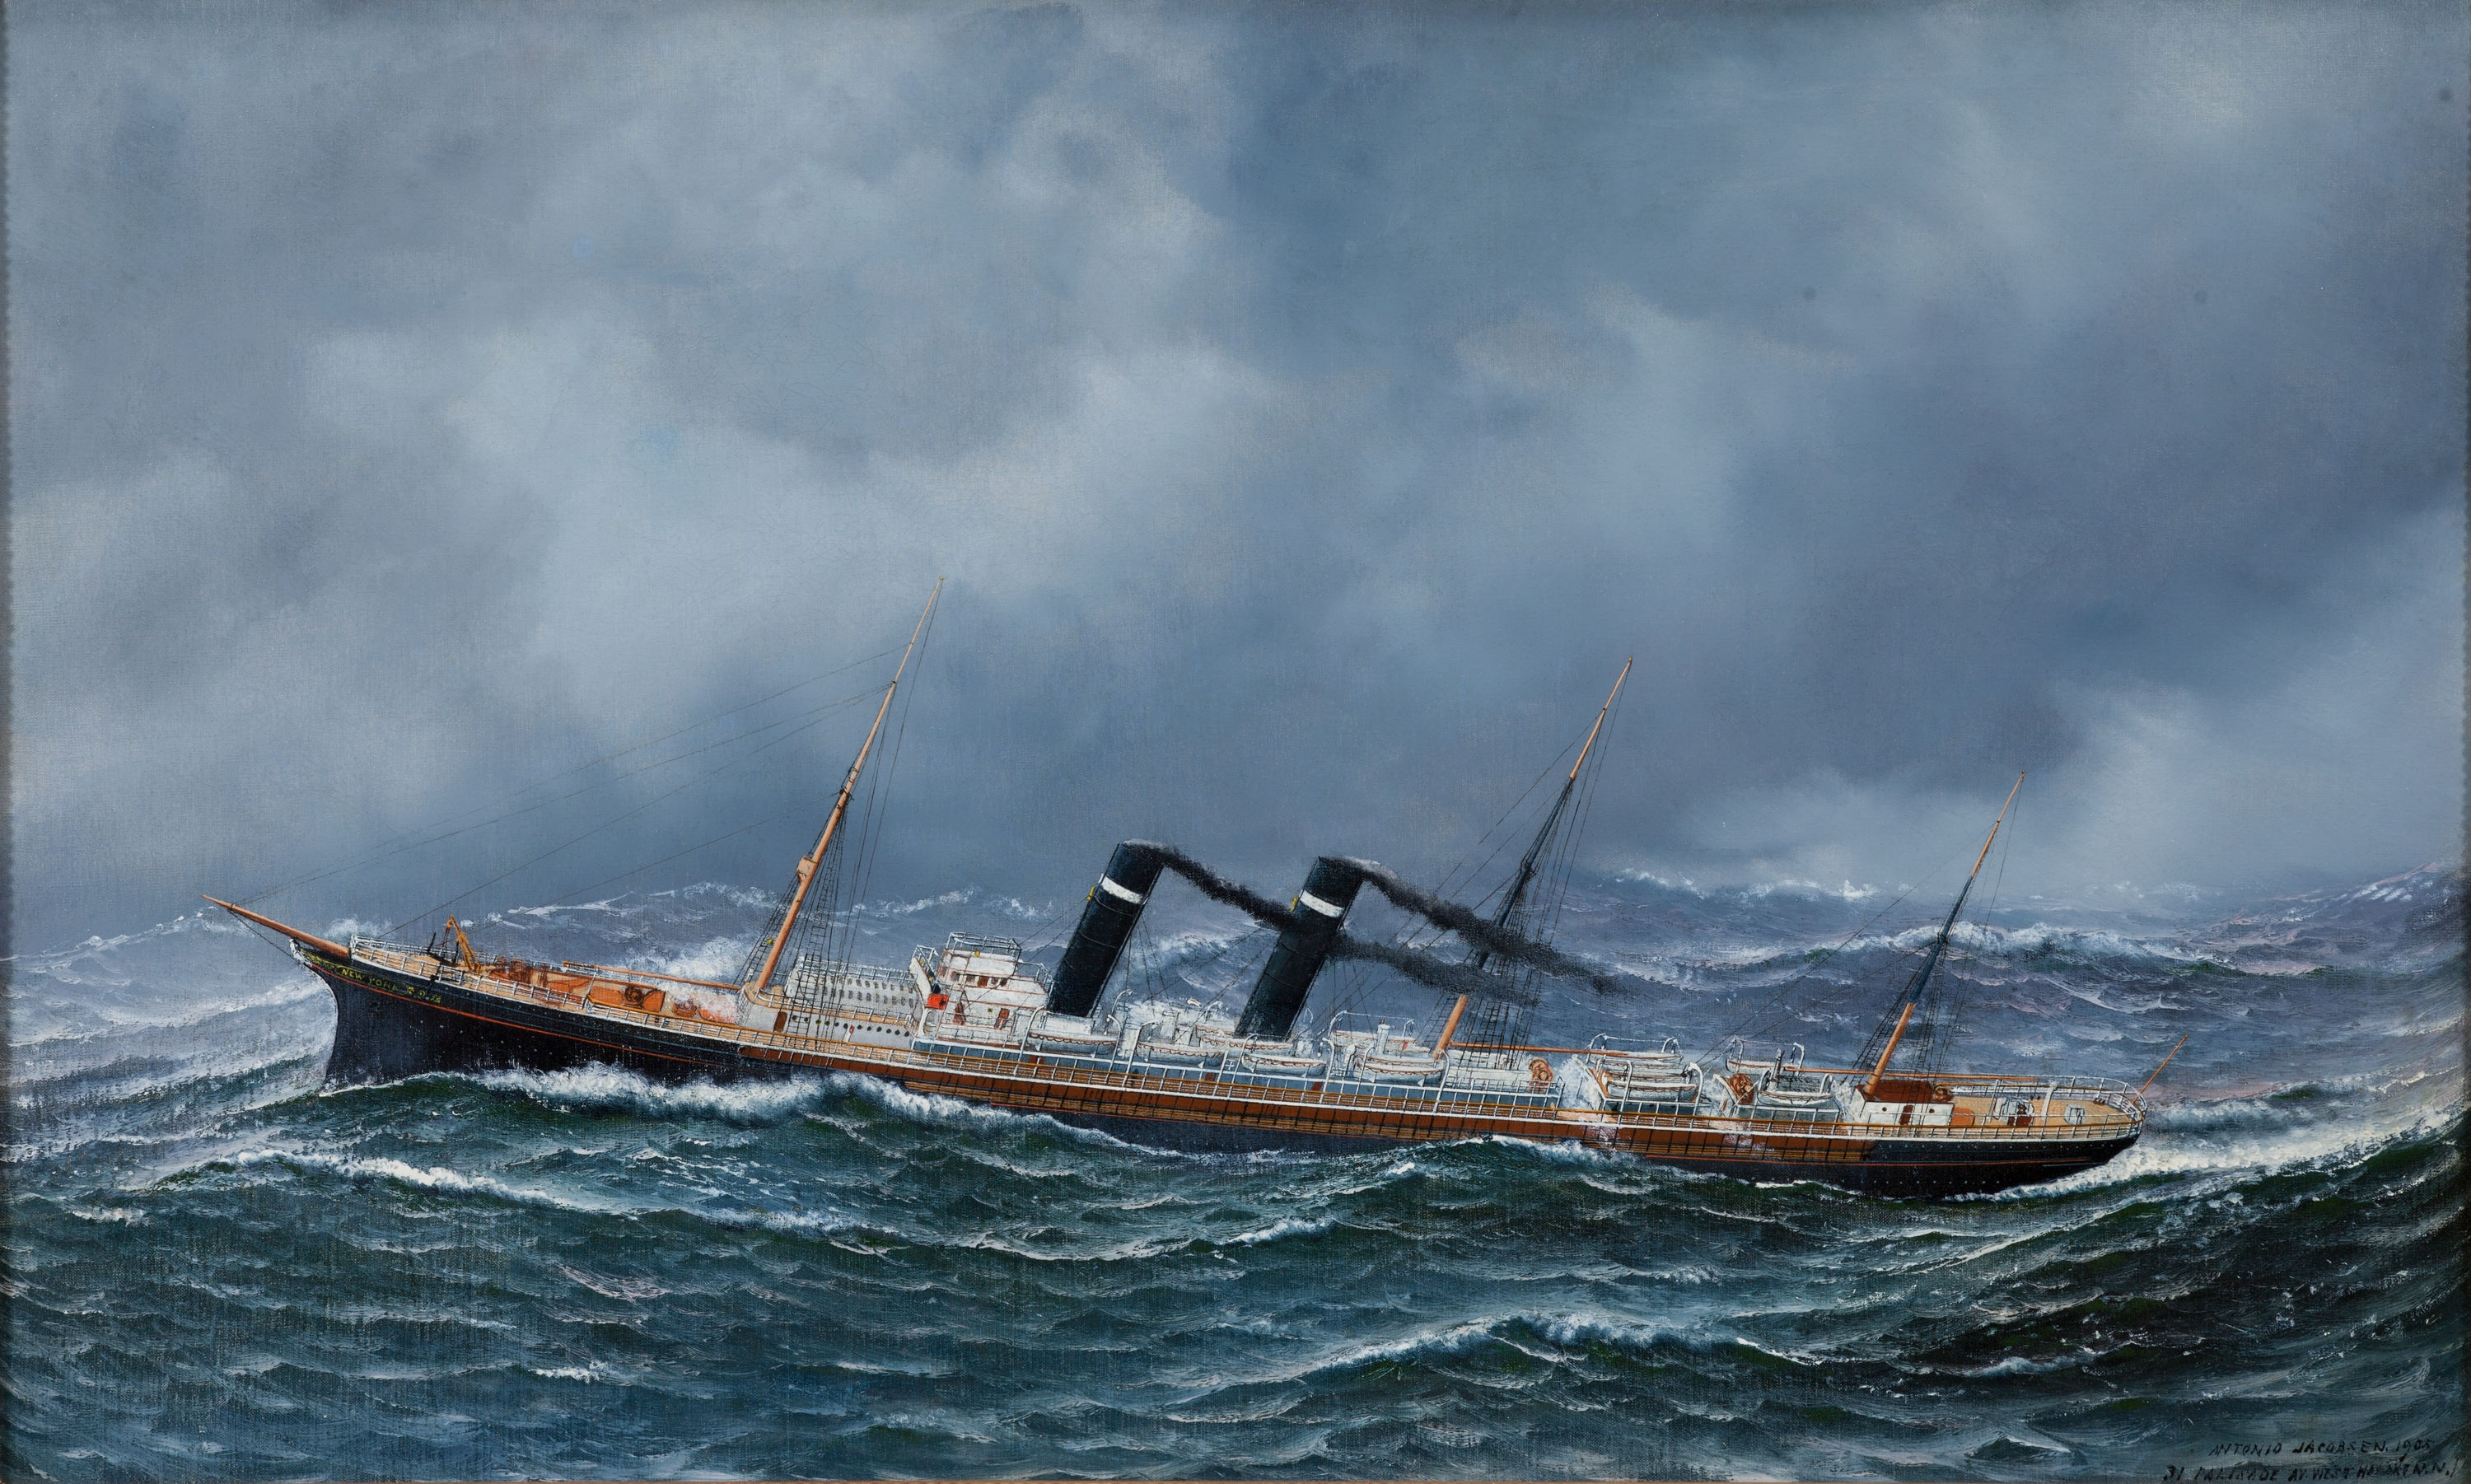 Antonio Jacobsen - 'S.S. New York' at Sea, 1905